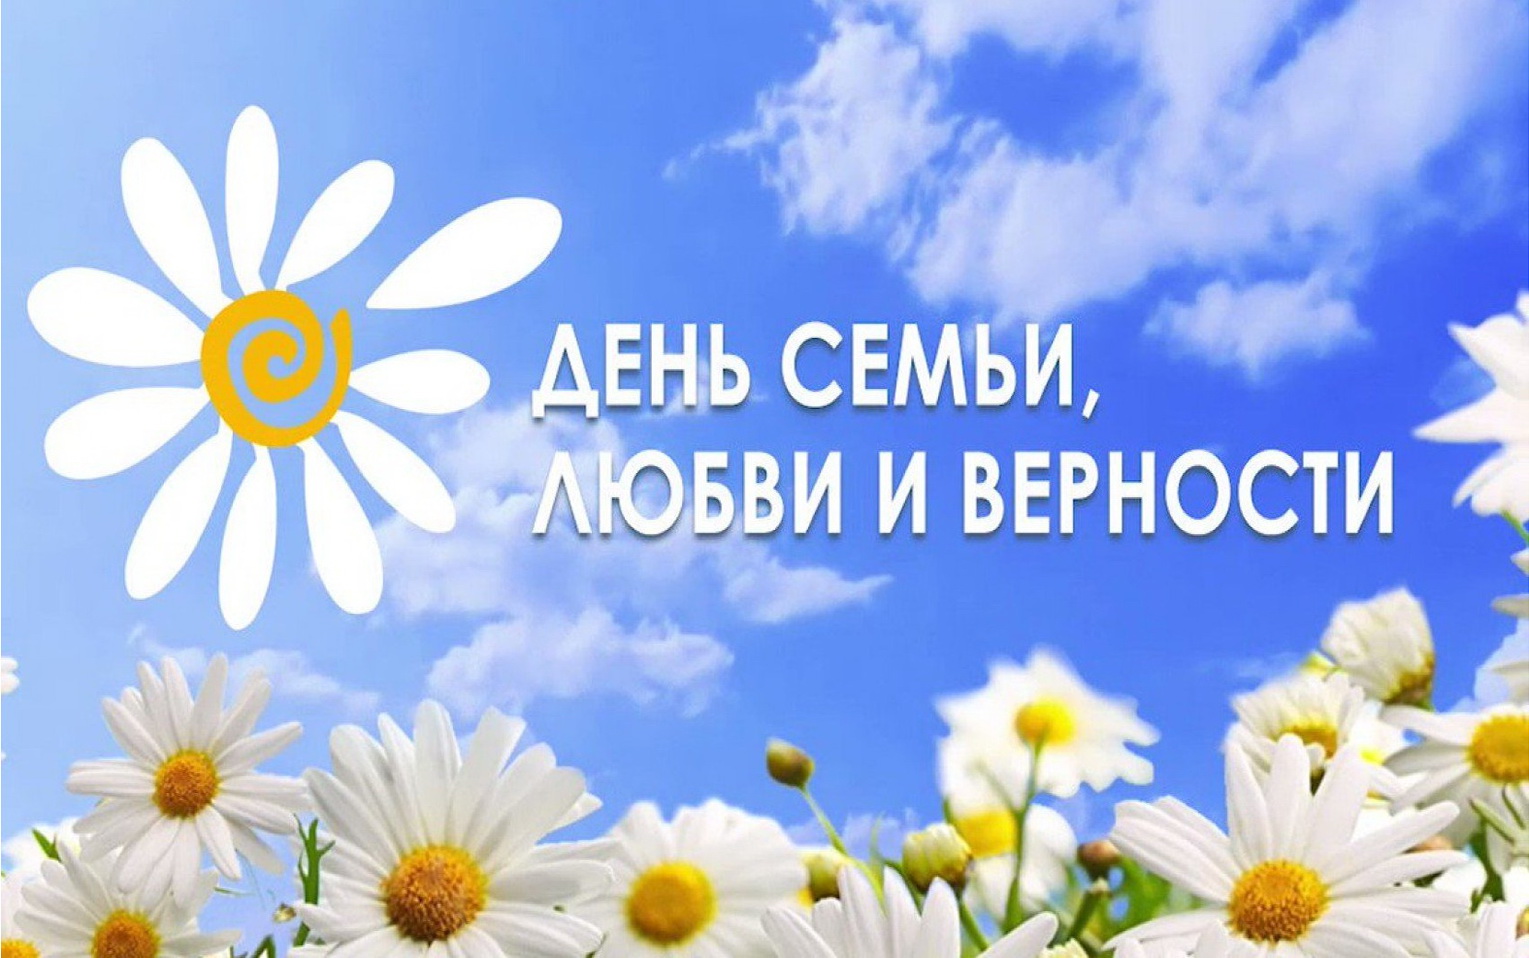 Соколов А.В. поздравил жителей Кировской области с Днем семьи, любви и верности.